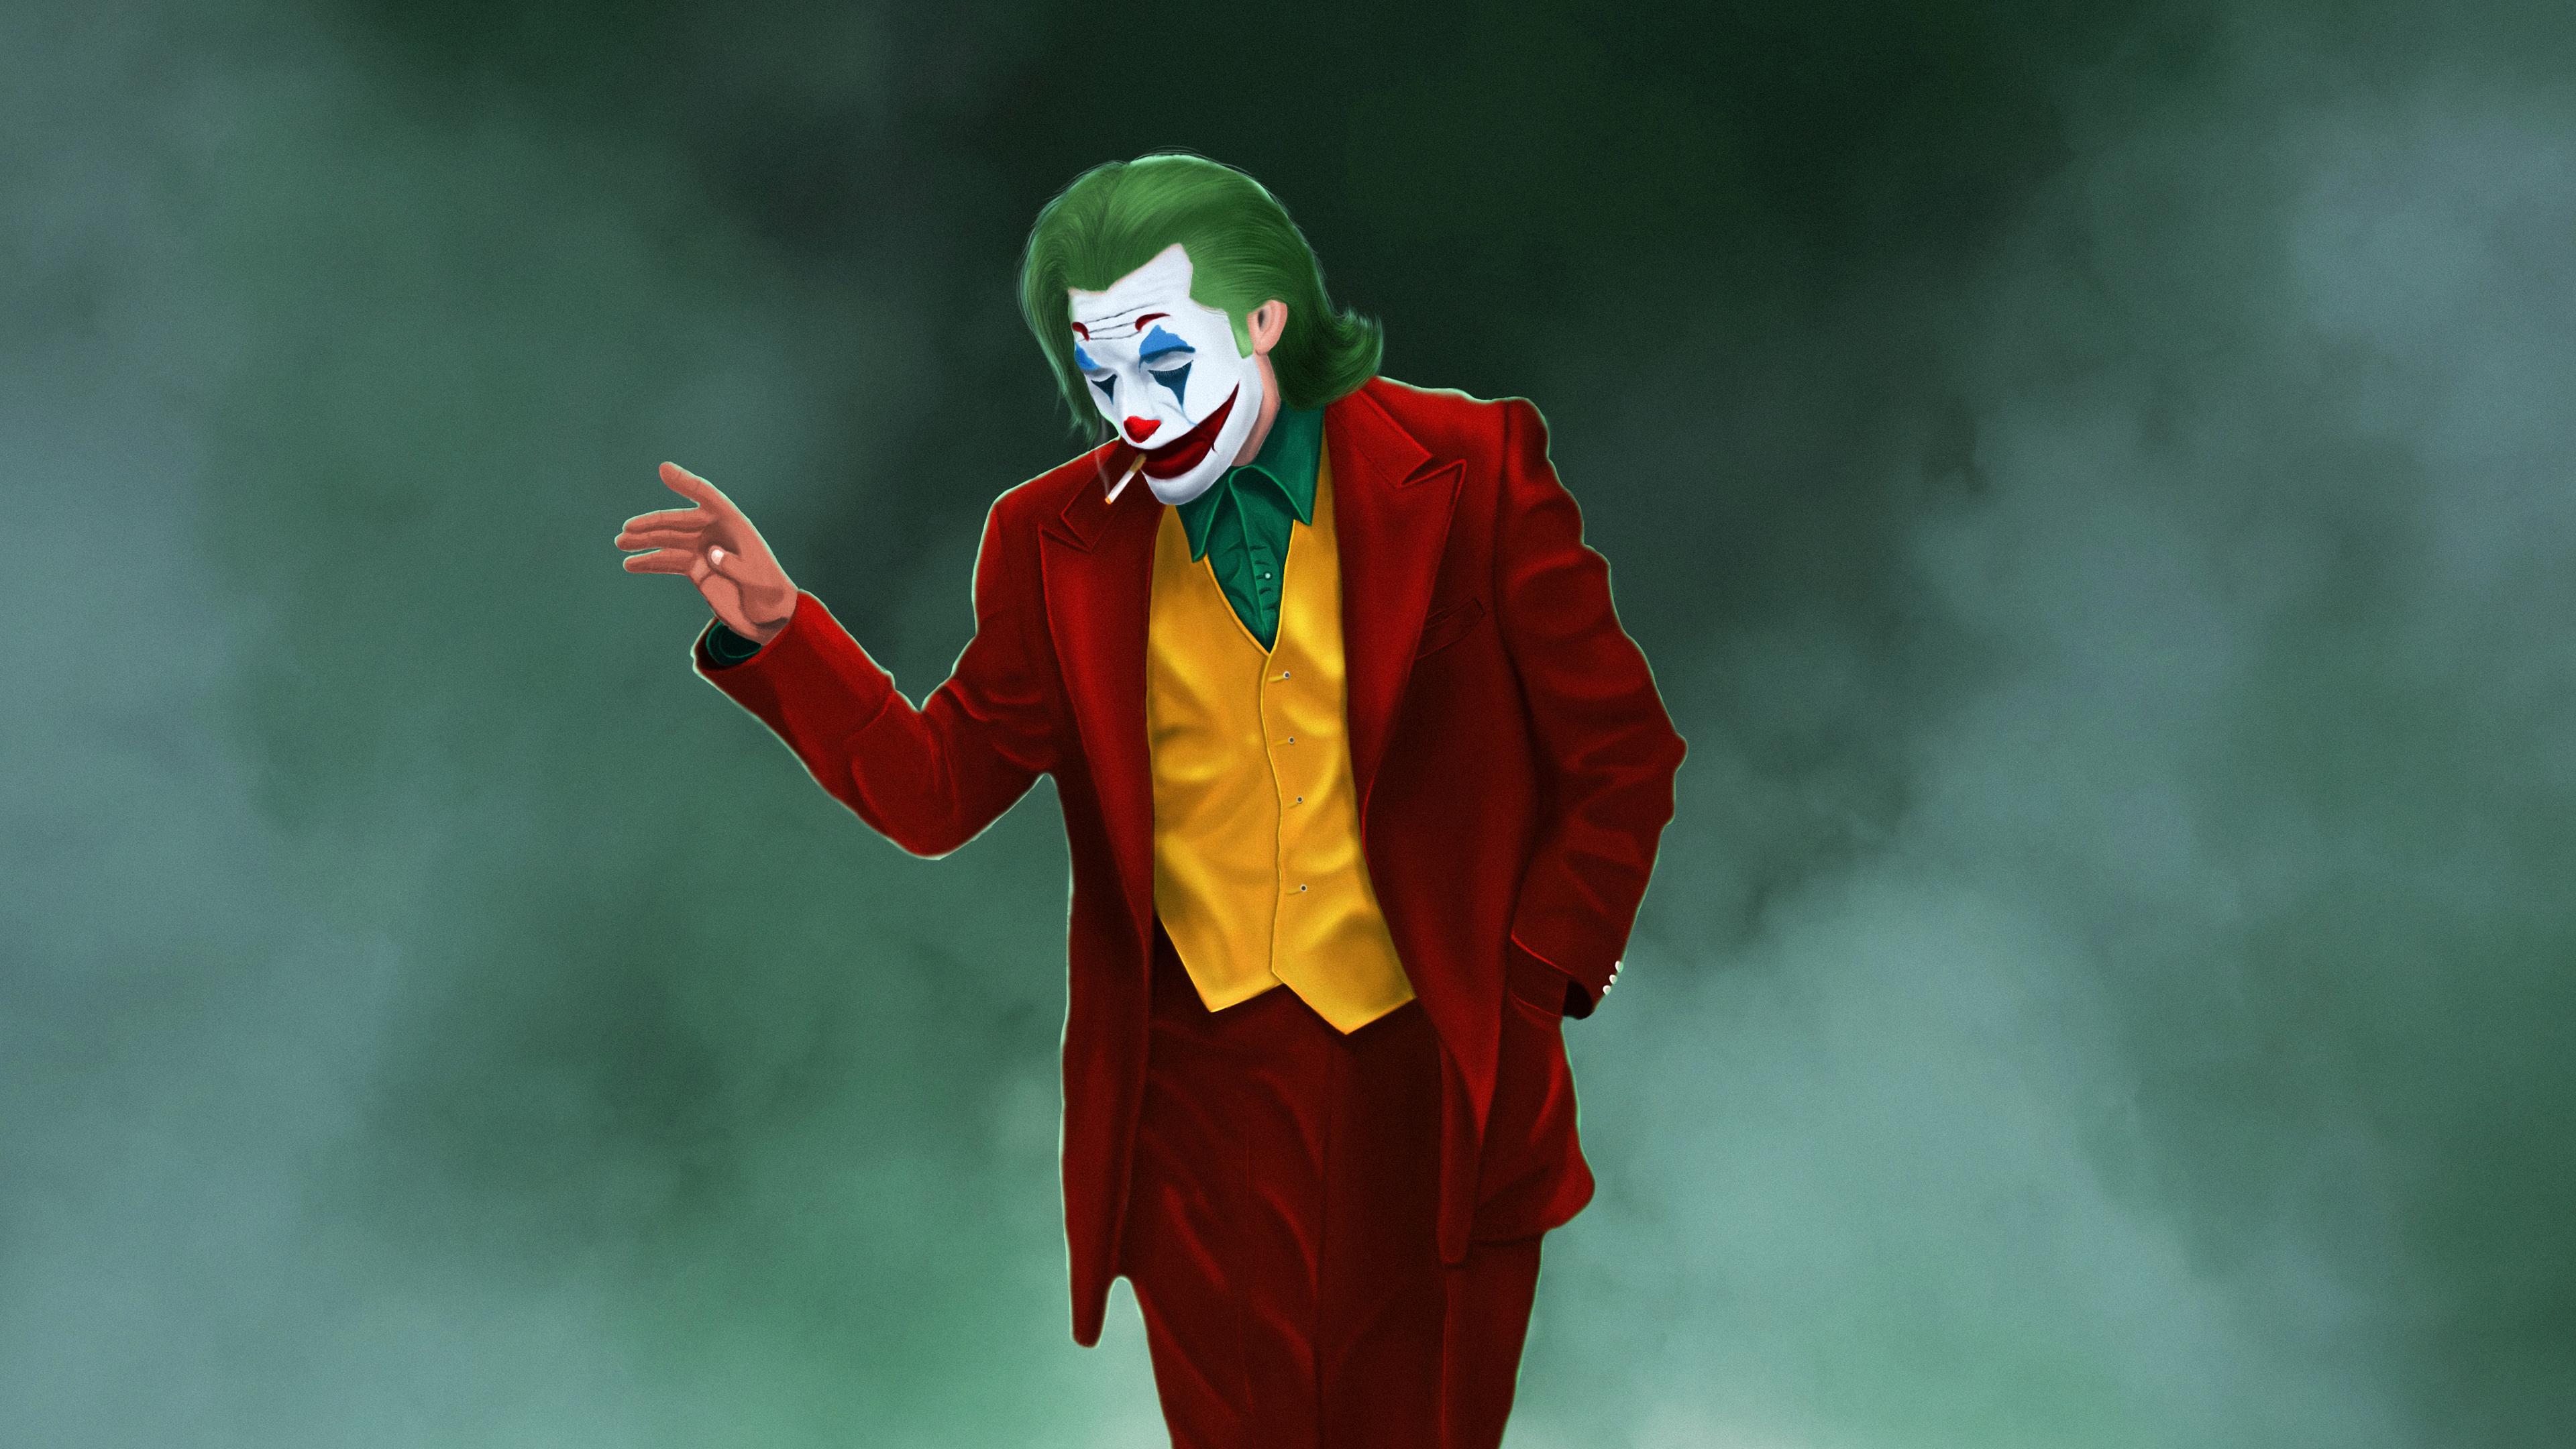 Joker 2019 Desktop Wallpapers Wallpaper Cave